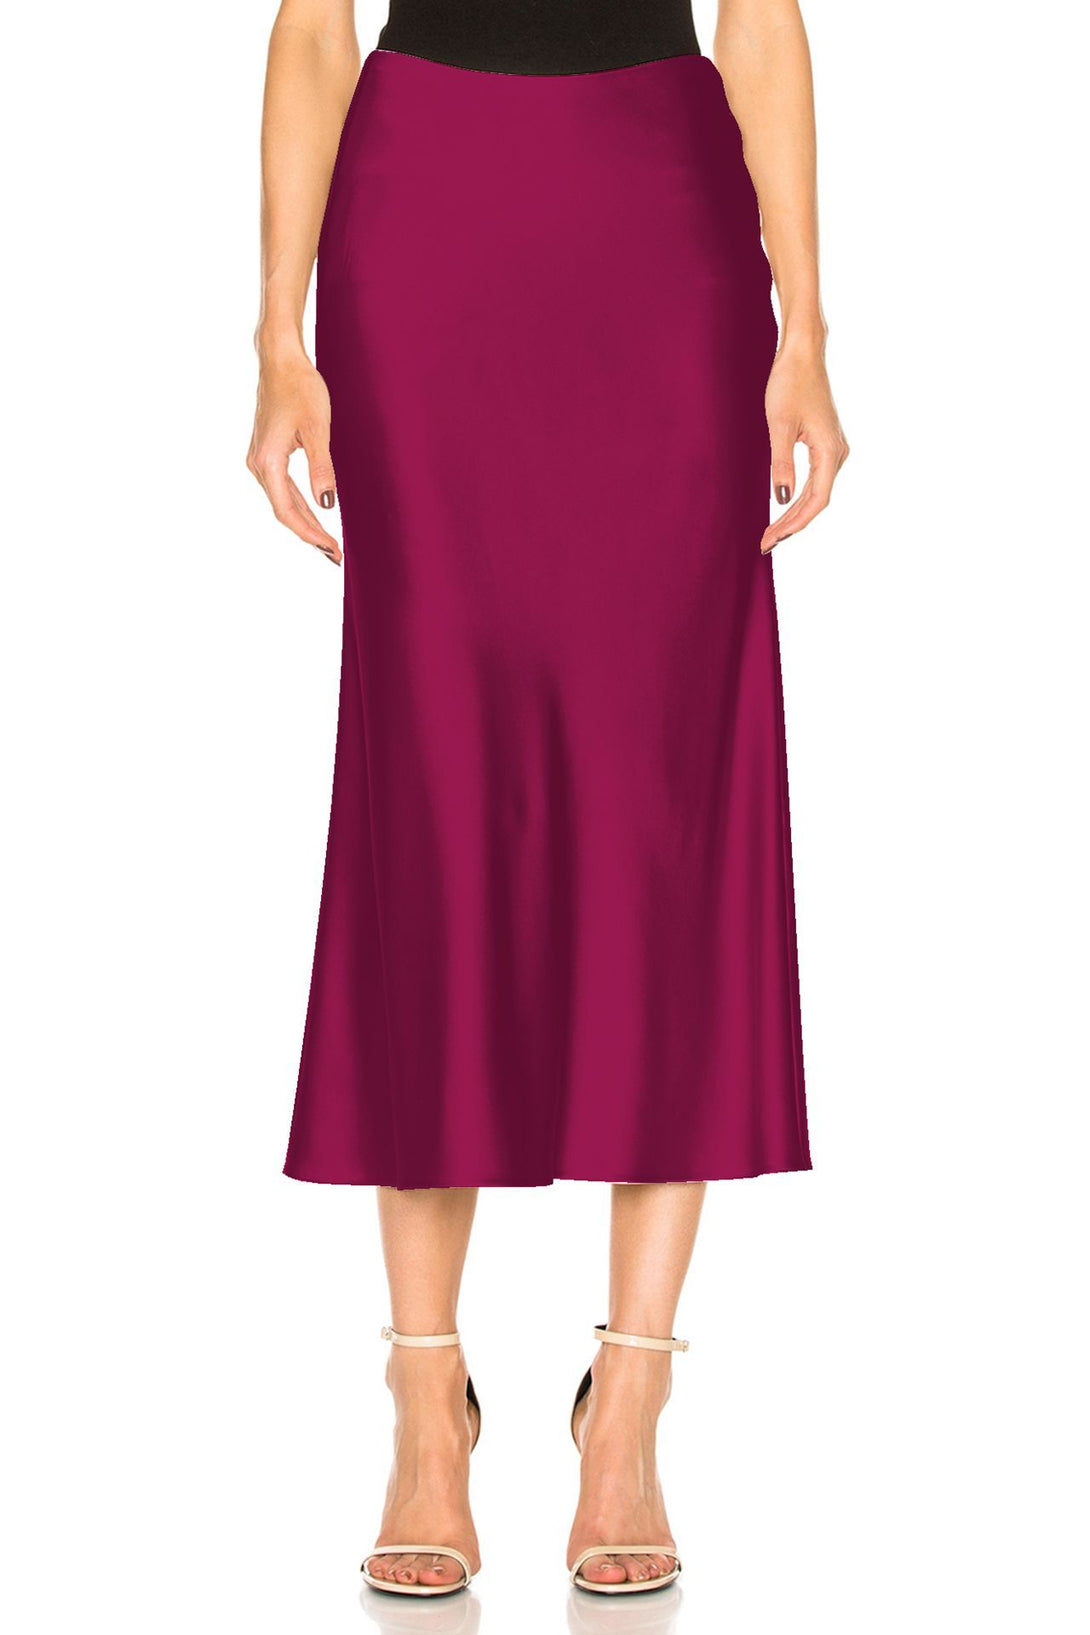 Designer-Silk-Skirt-In-Purple-For-Womens-By-Kyle-Richard